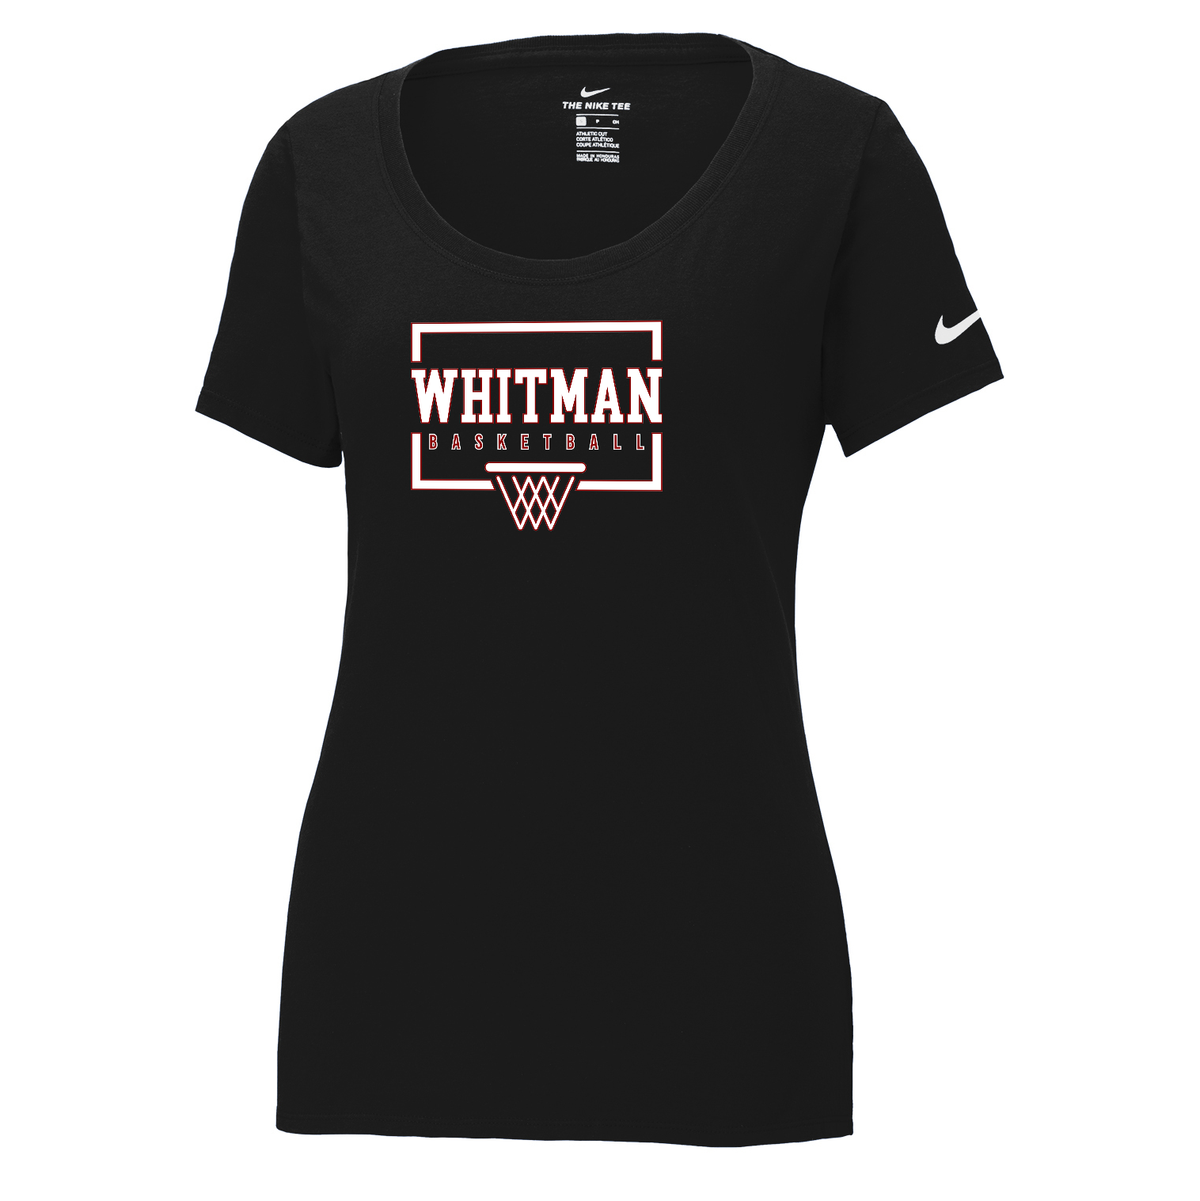 Whitman Women's Basketball Nike Ladies Core Cotton Tee